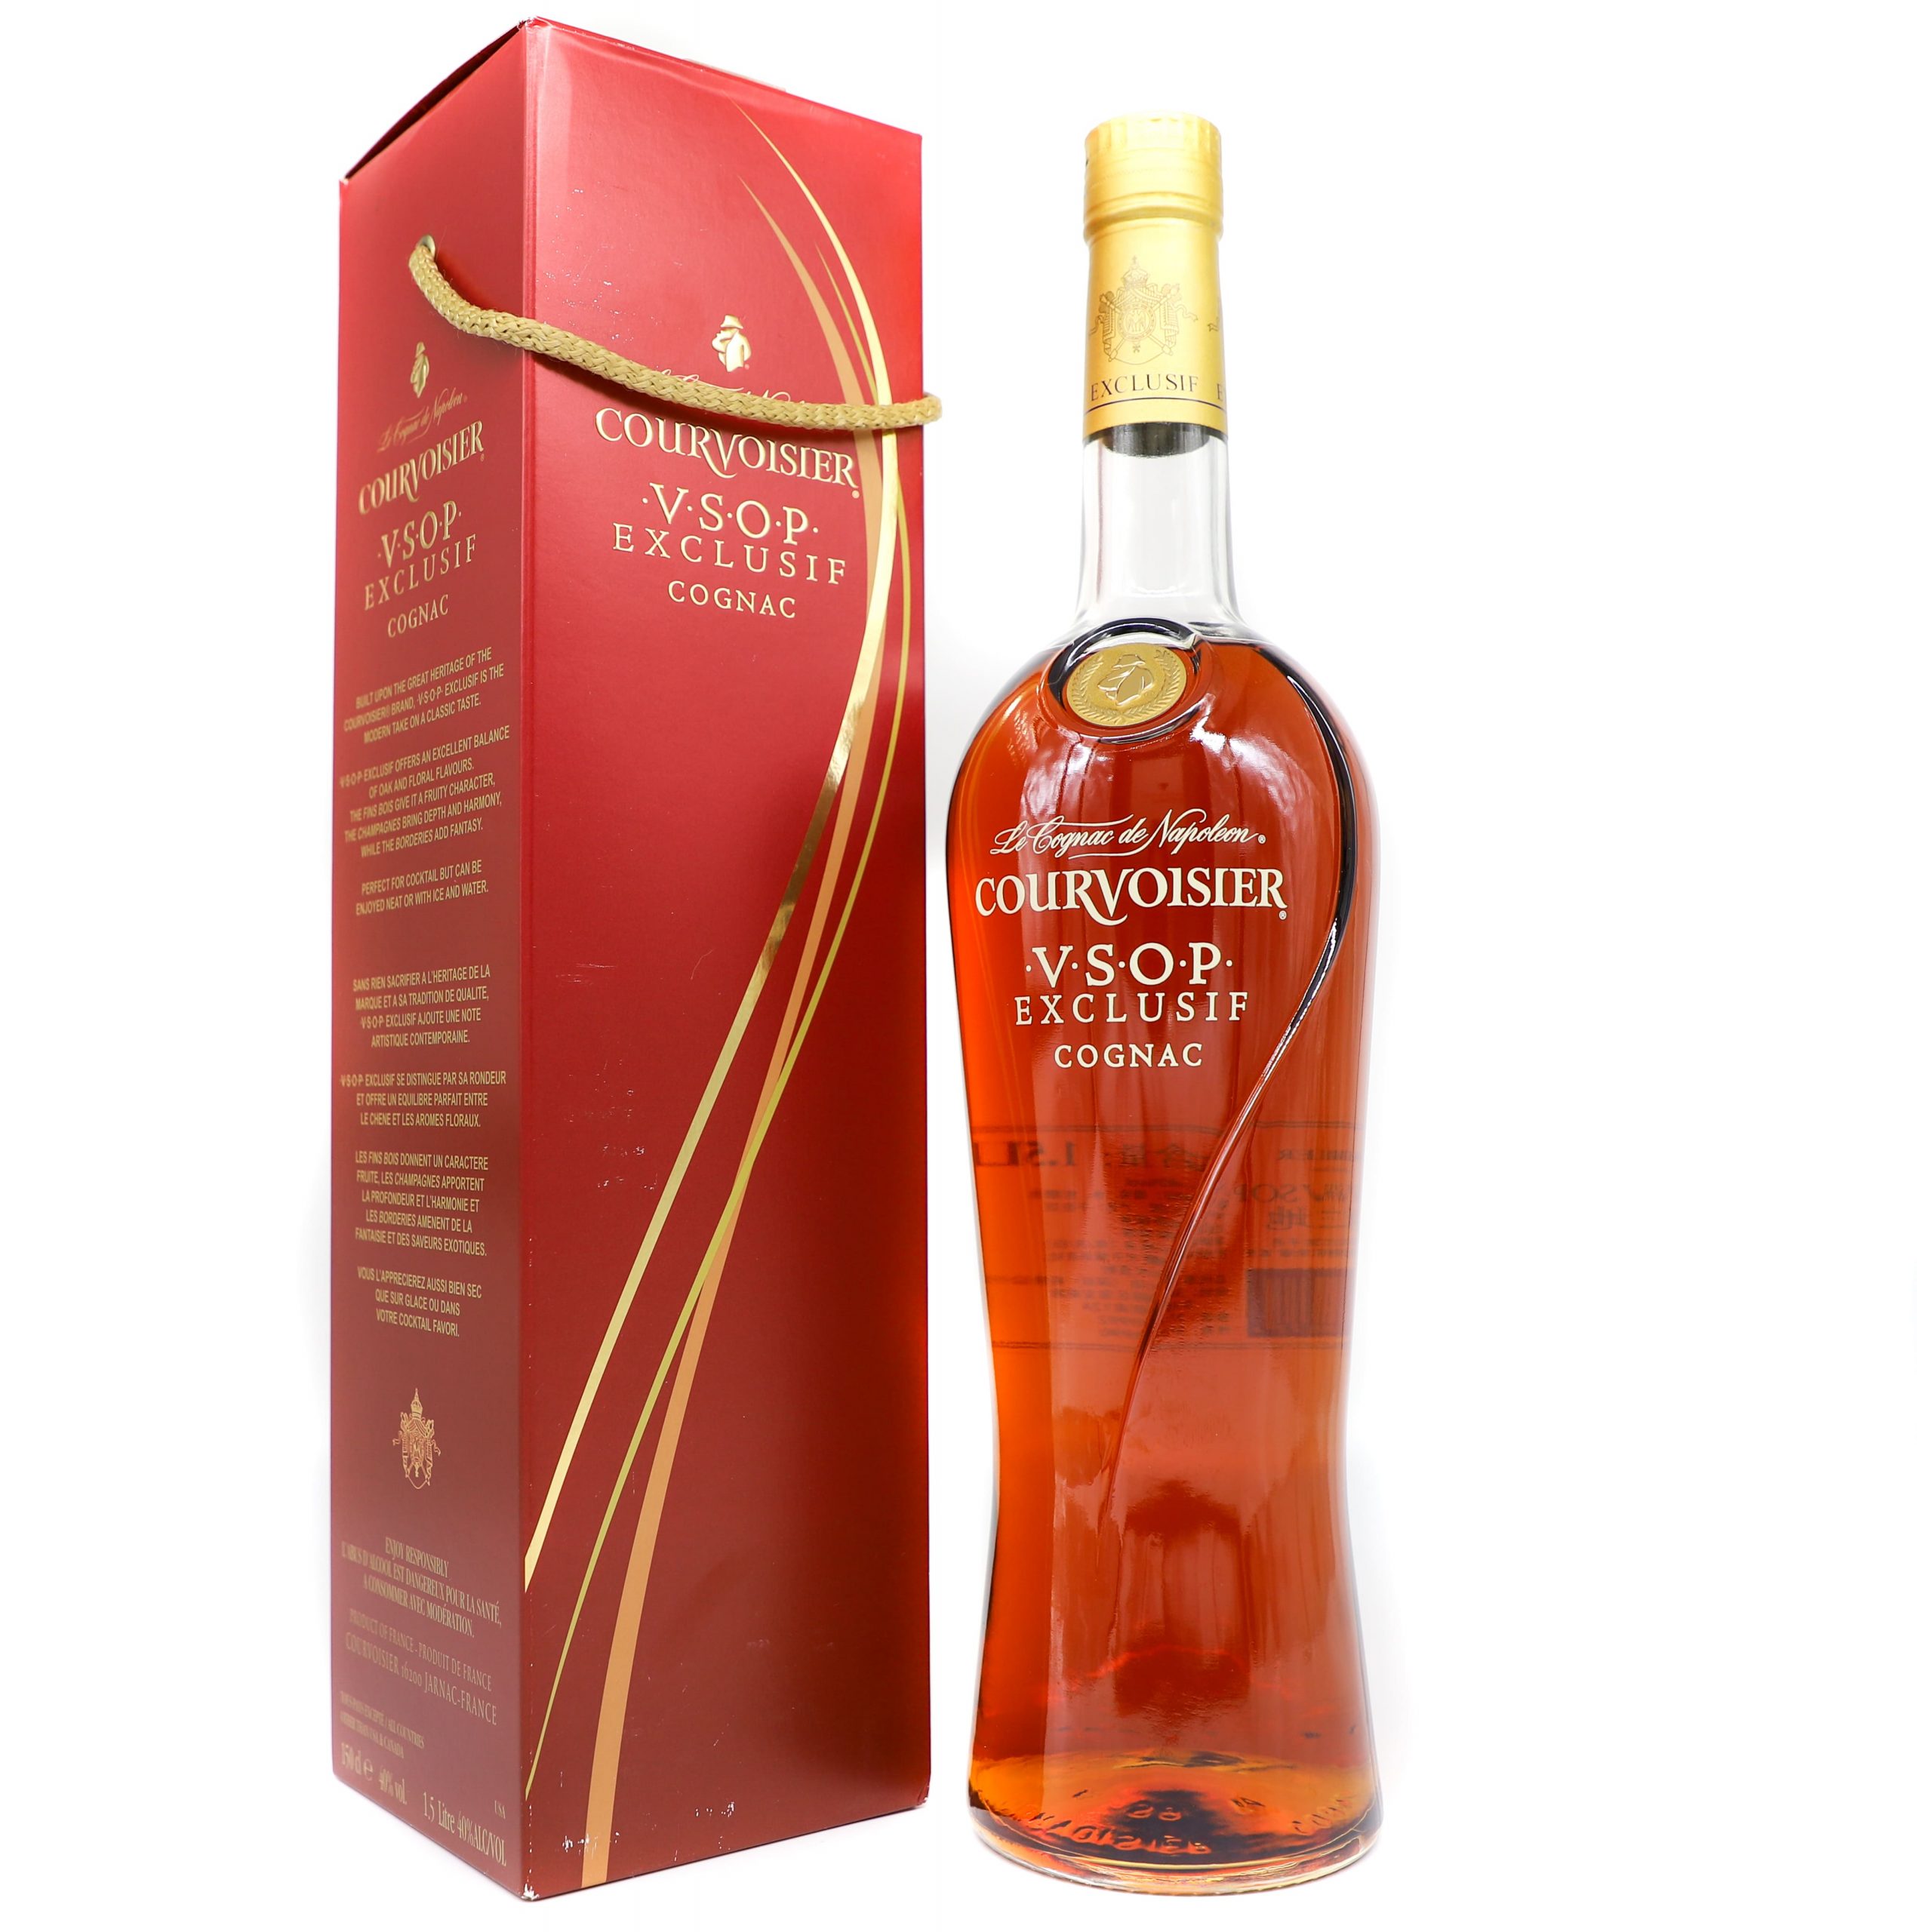 Courvoisier VSOP Exclusif Cognac 1500ml